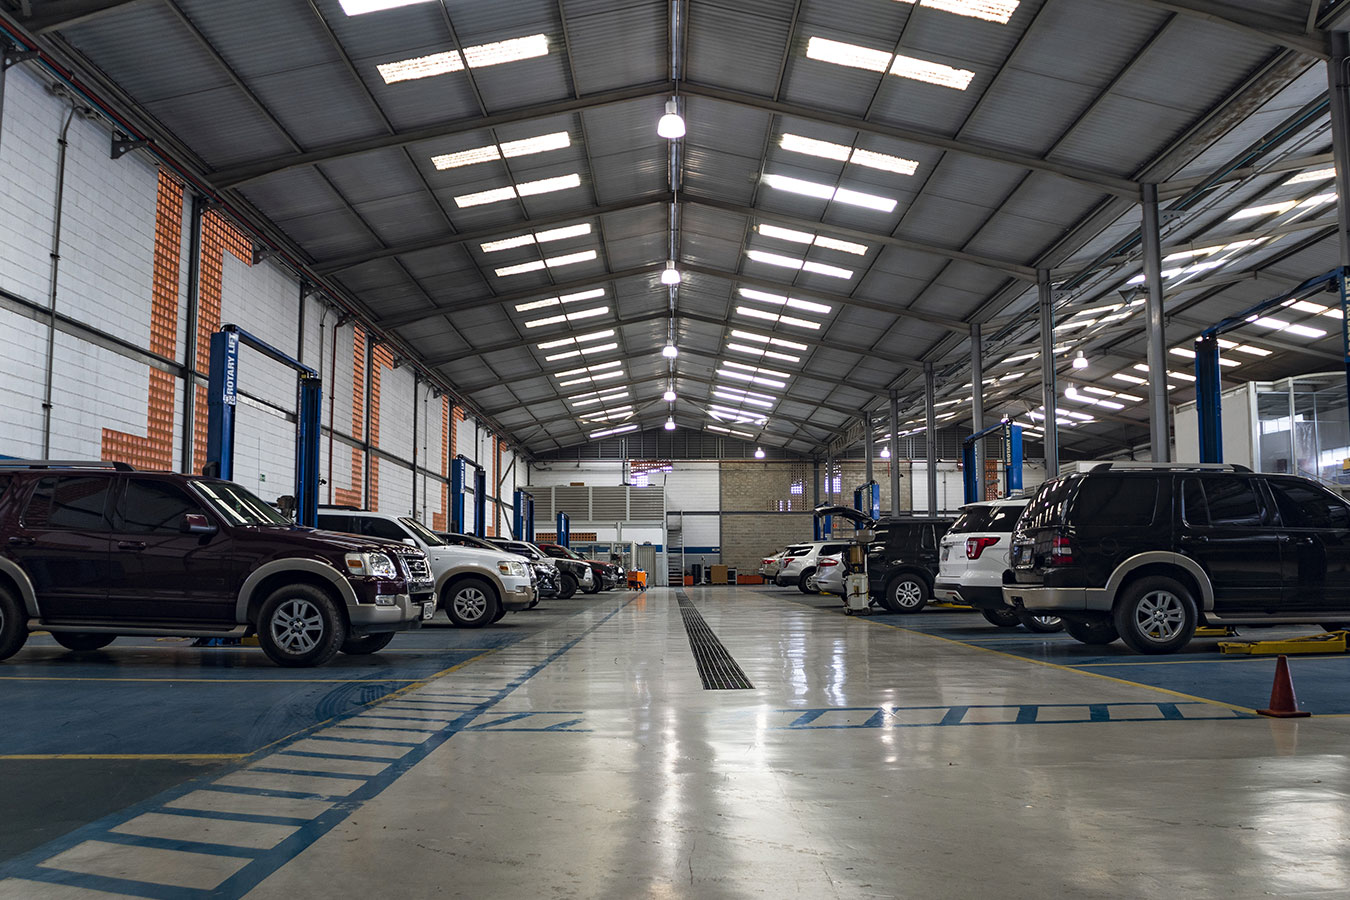 Confía tu vehículo en nuestro equipo de profesionales con certificación técnica Ford en el mejor taller de Maracay - Auto Plaza